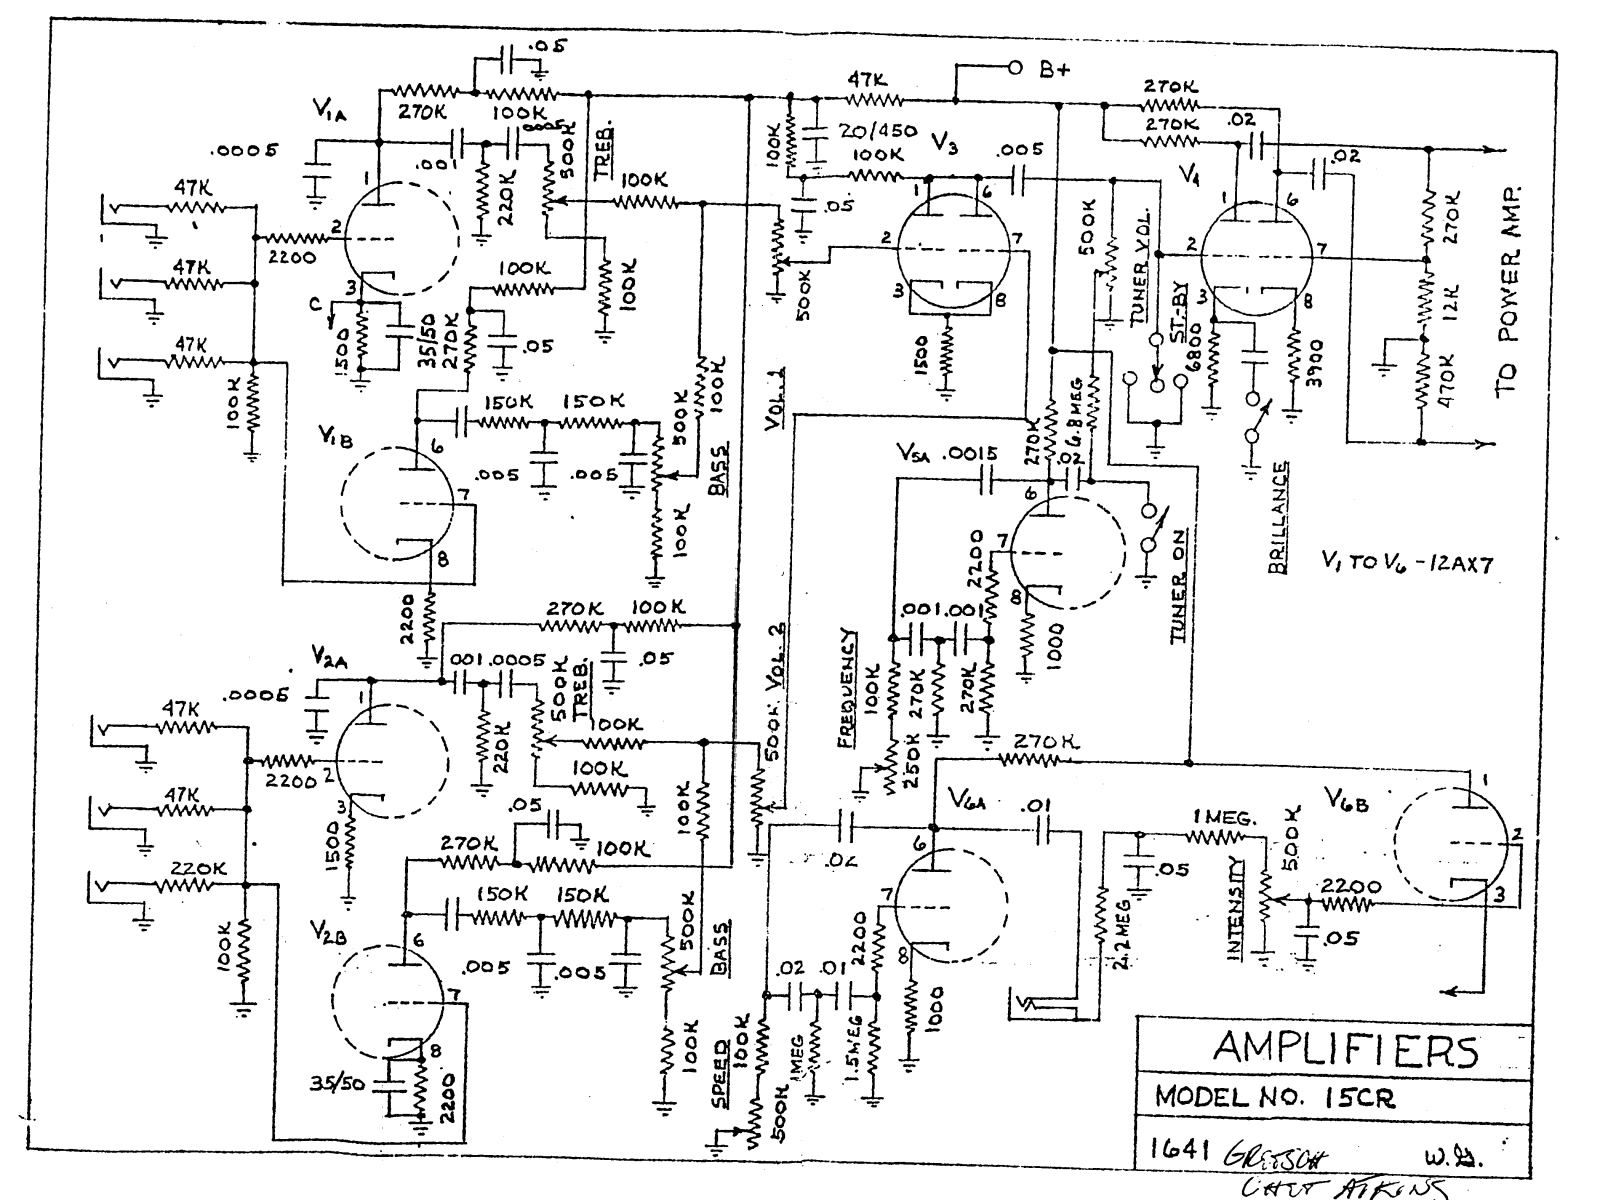 Gretsch 6160 schematic